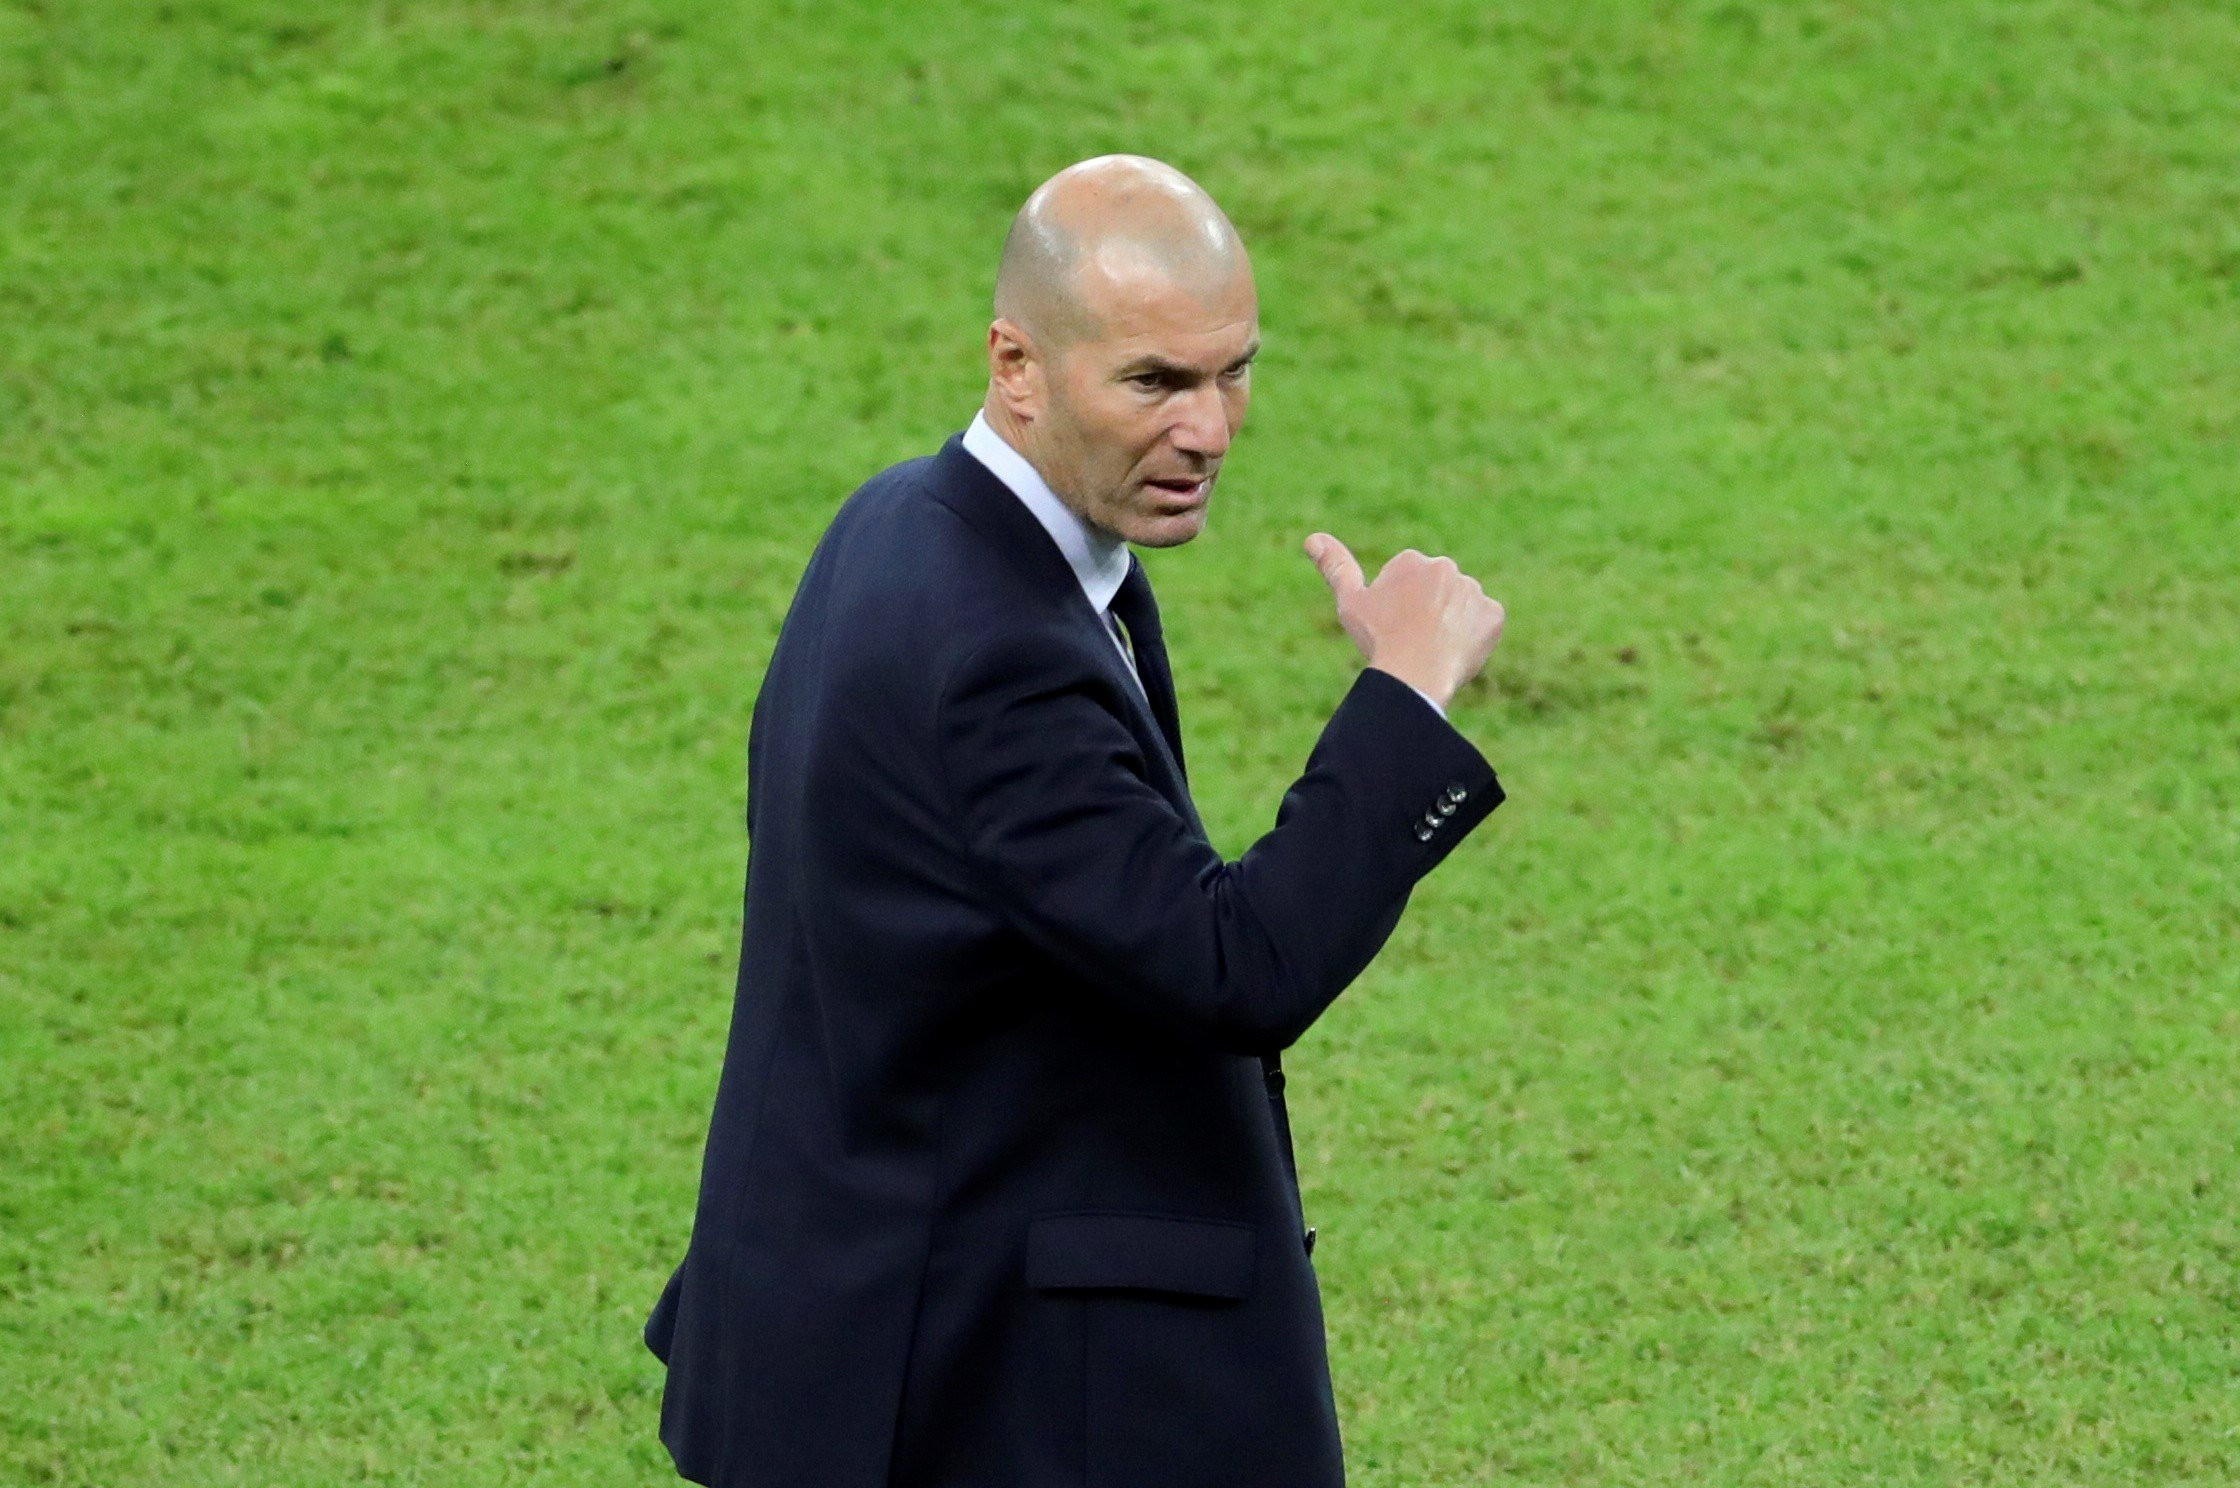 Zidane durante las semifinales de la Supercopa de España / EFE